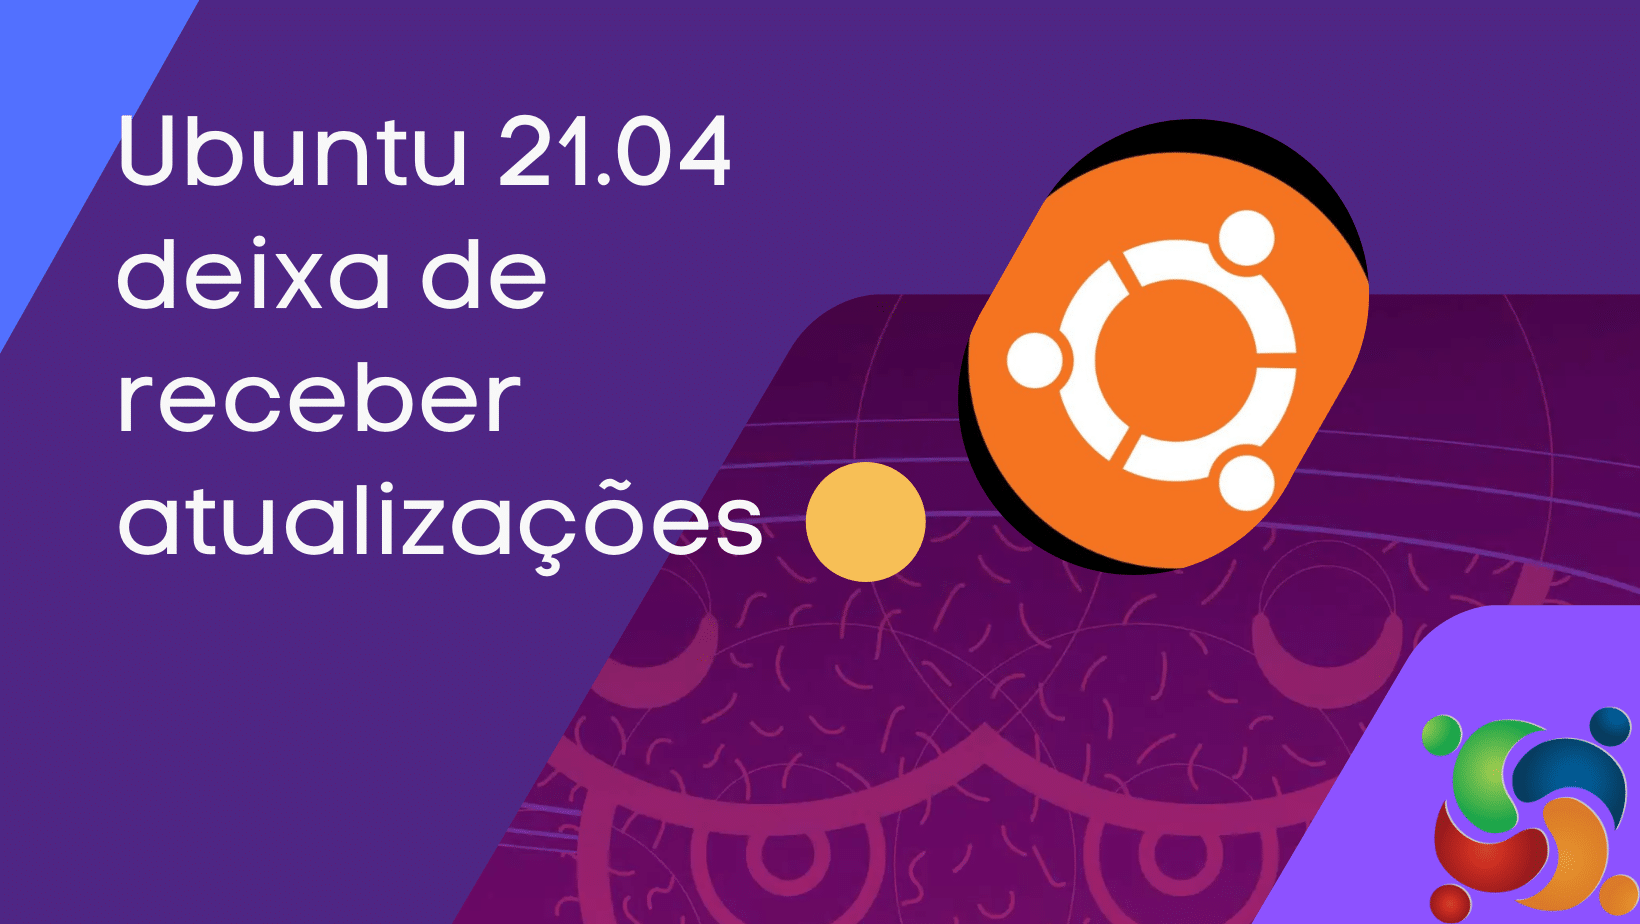 Acaba na próxima semana o suporte ao Ubuntu 21.04